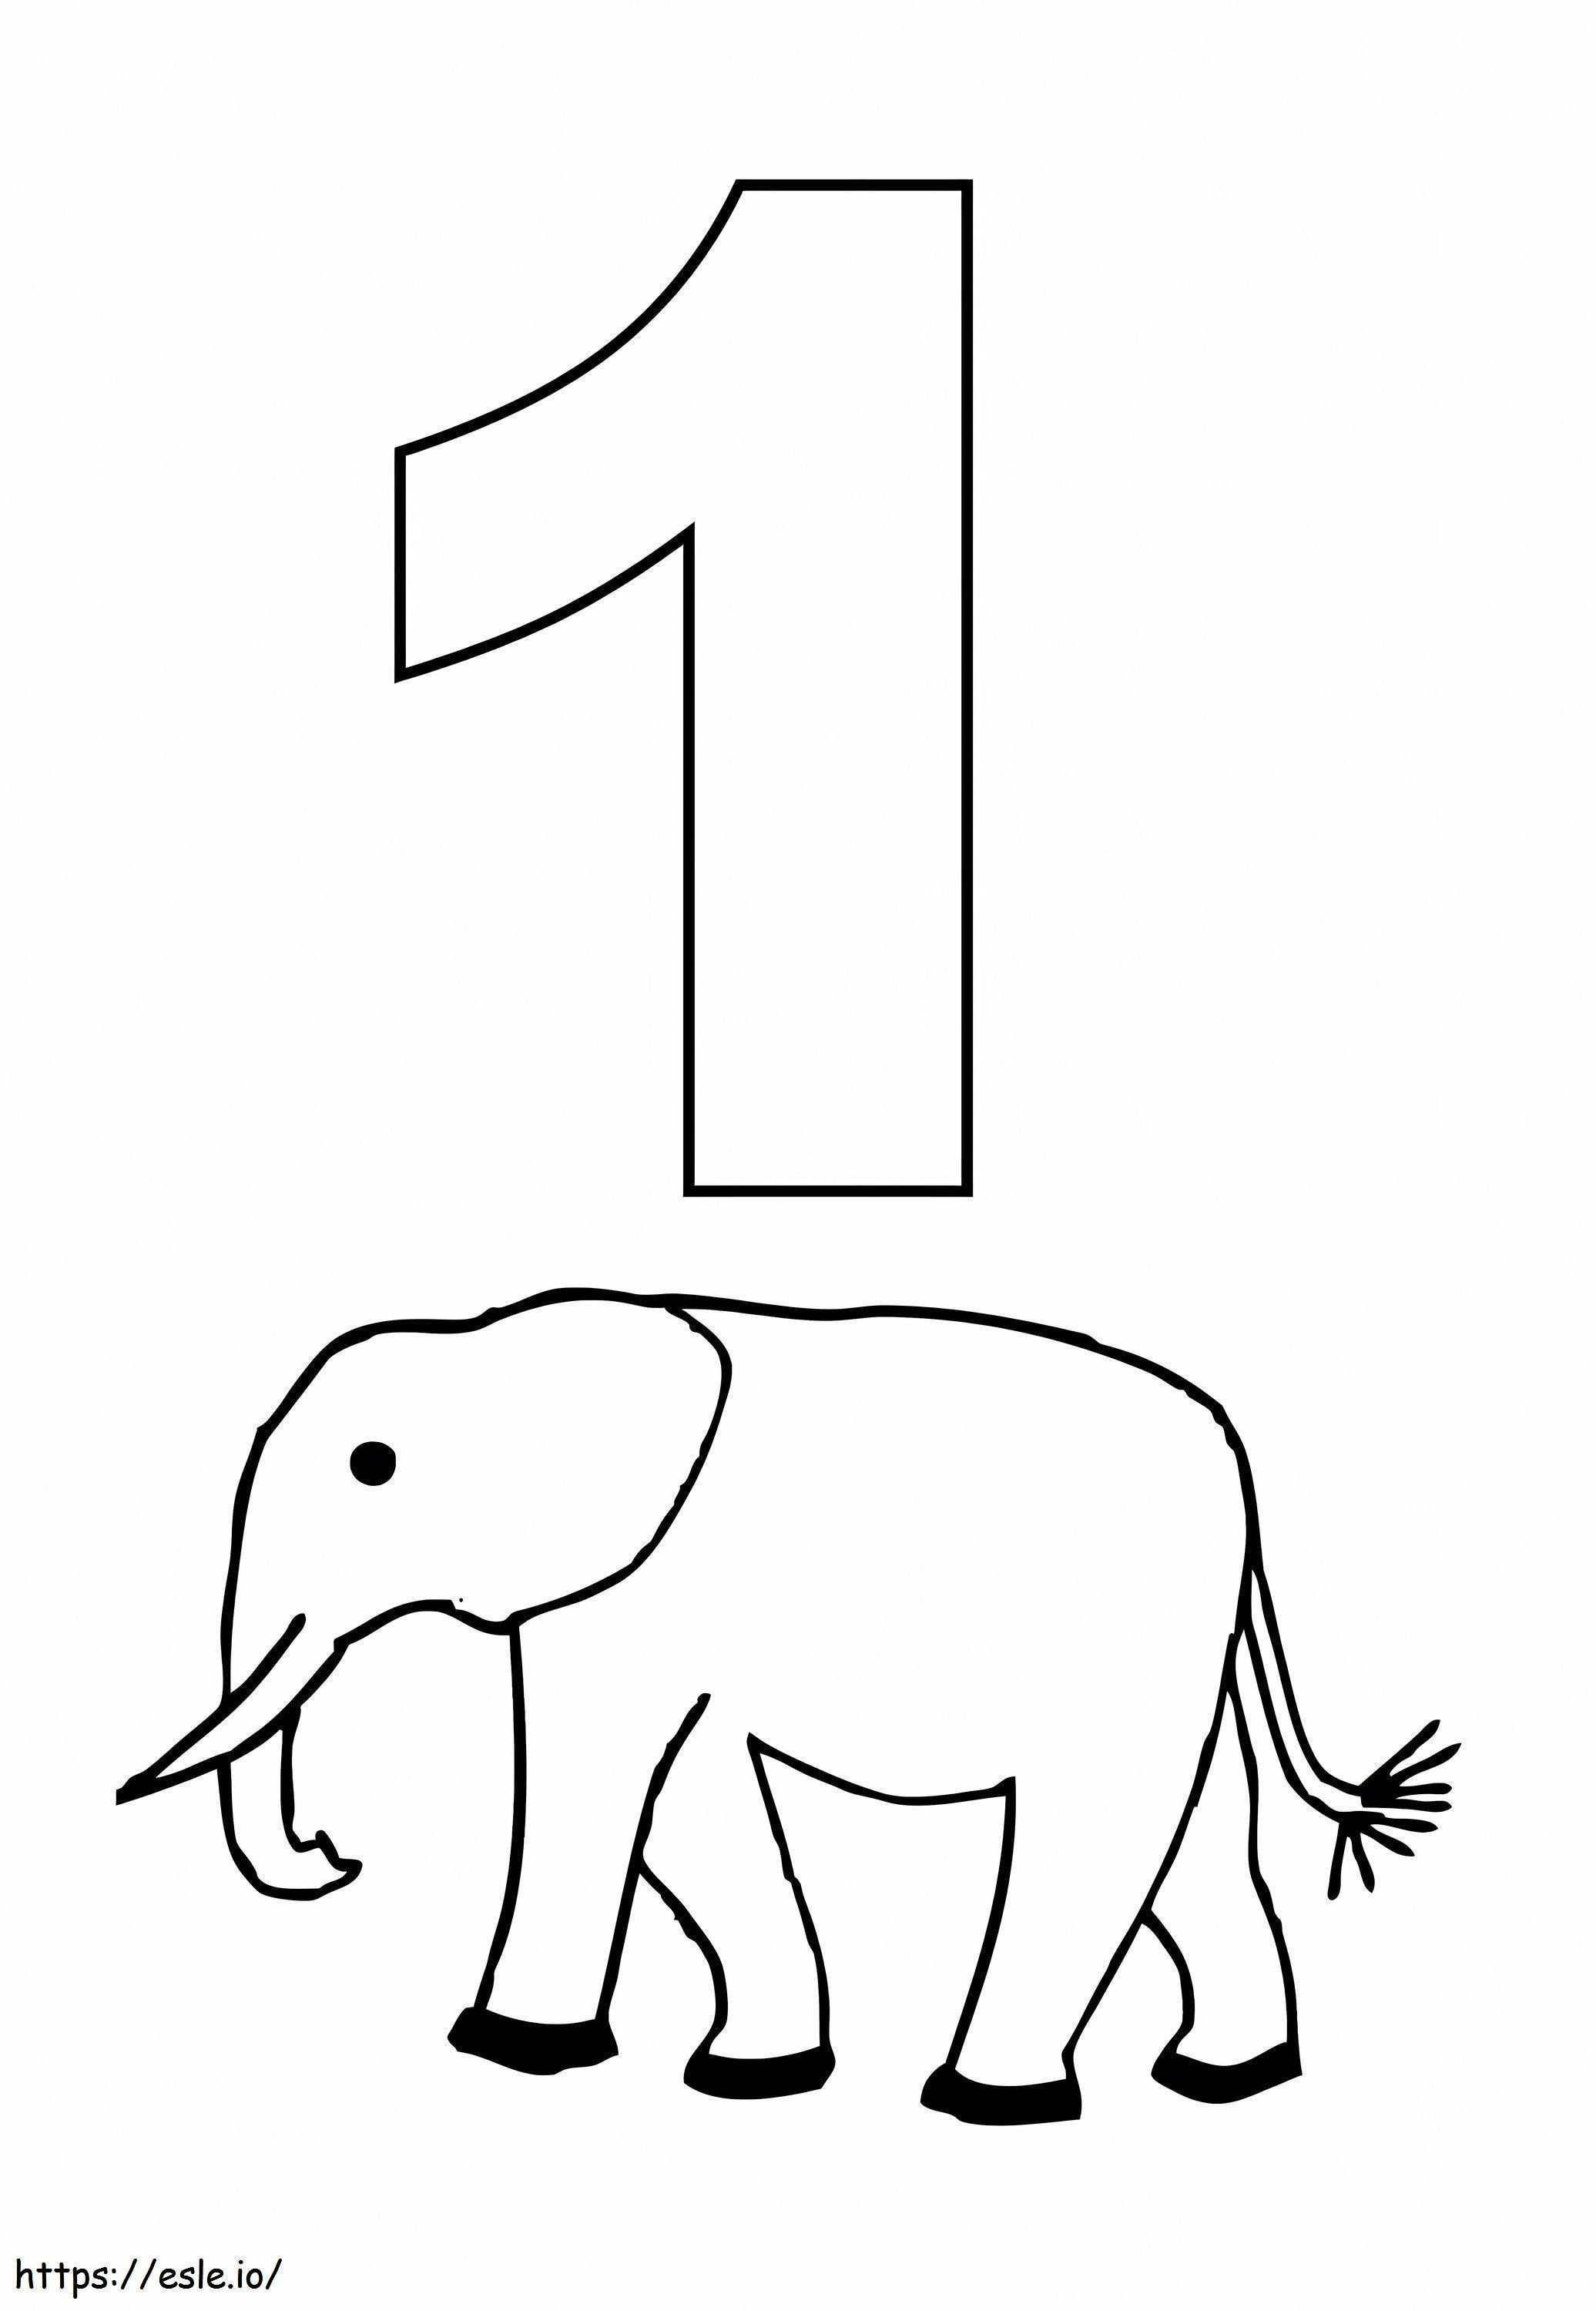 Numero 1 ed elefante da colorare